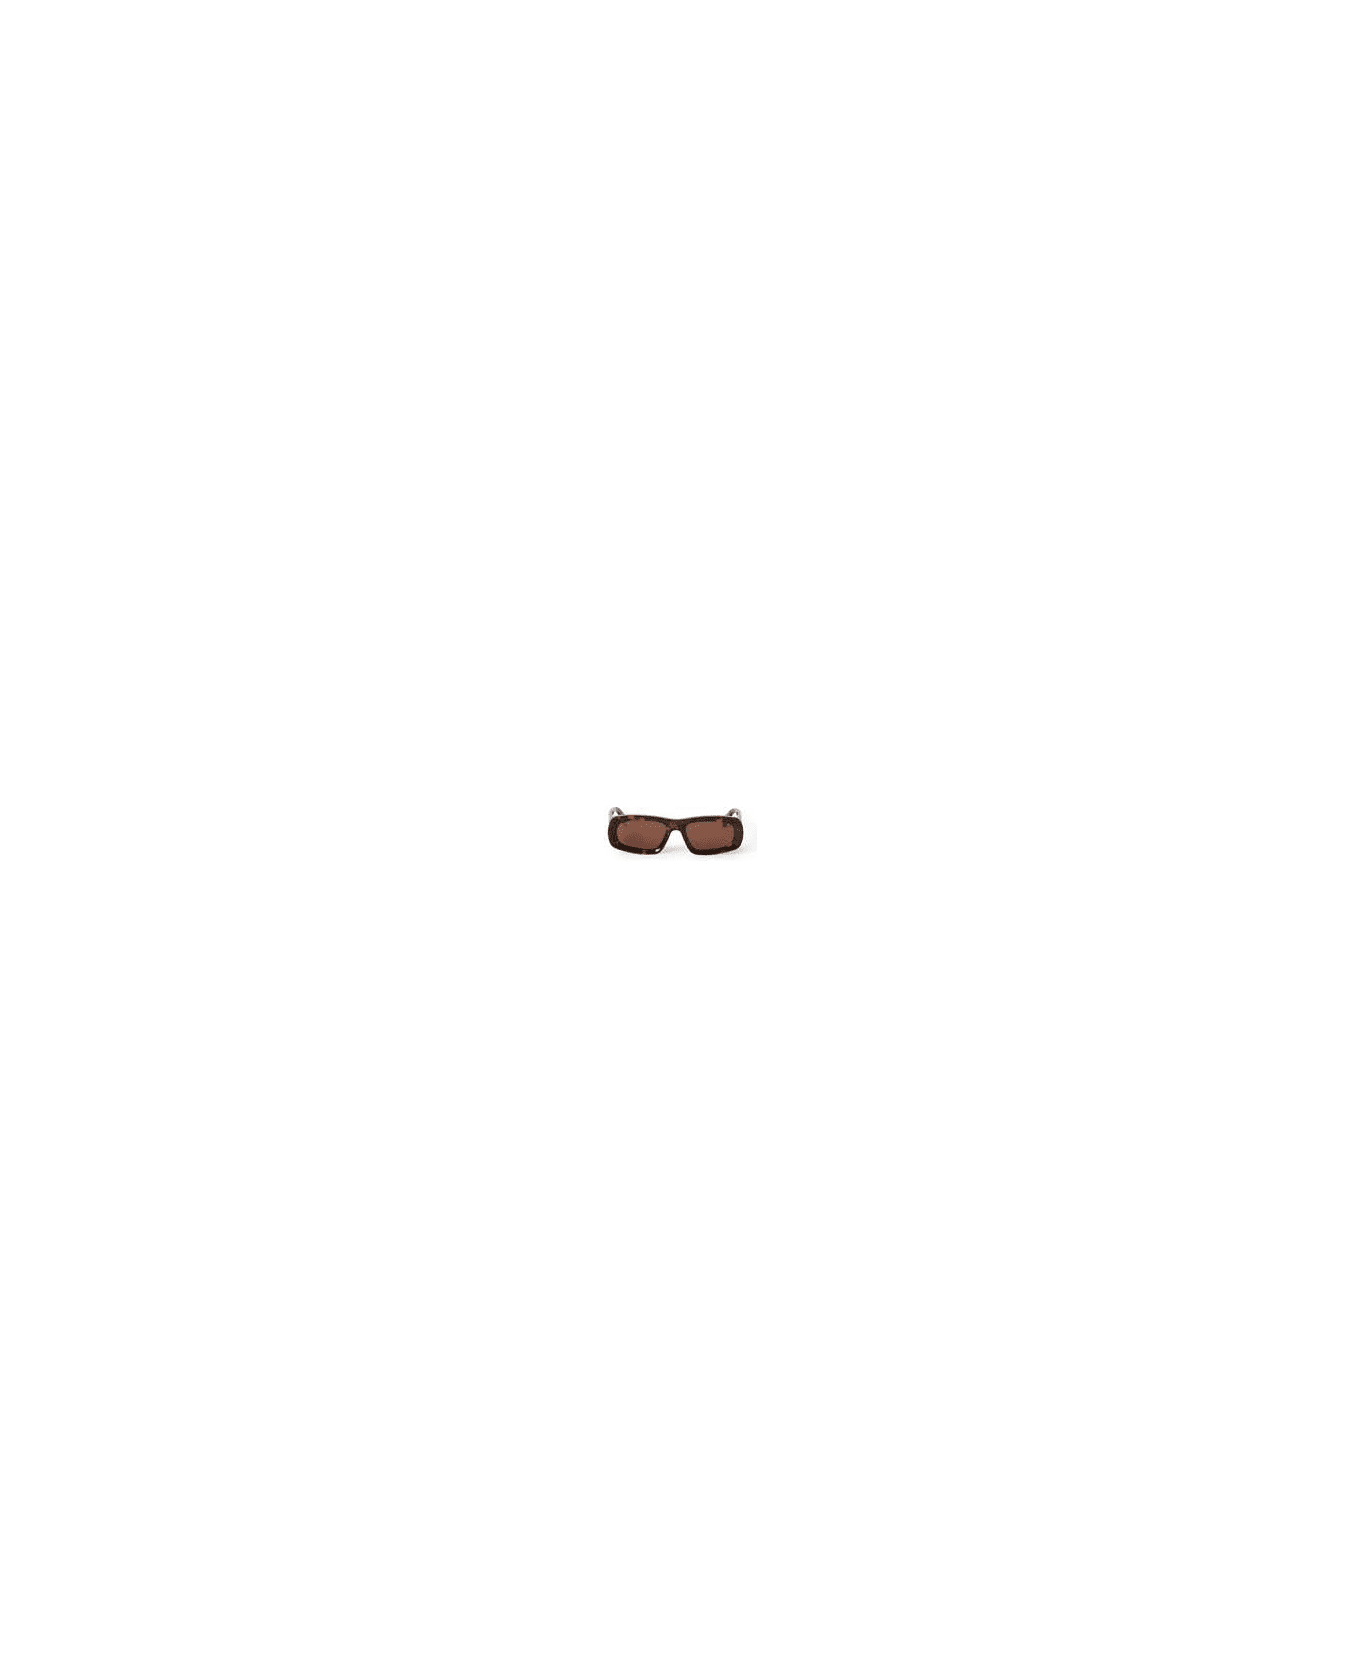 Off-White AUSTIN SUNGLASSES Sunglasses - Havana